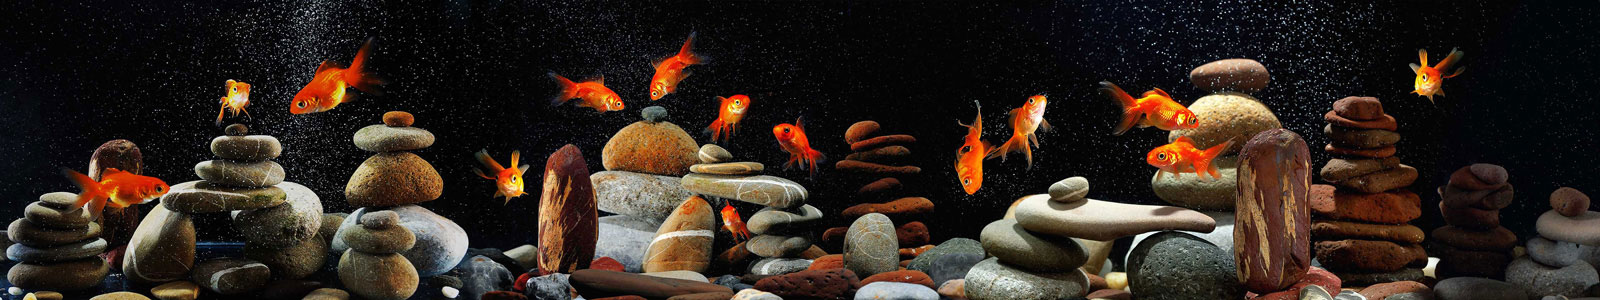 №4955 - Аквариум с золотыми рыбками